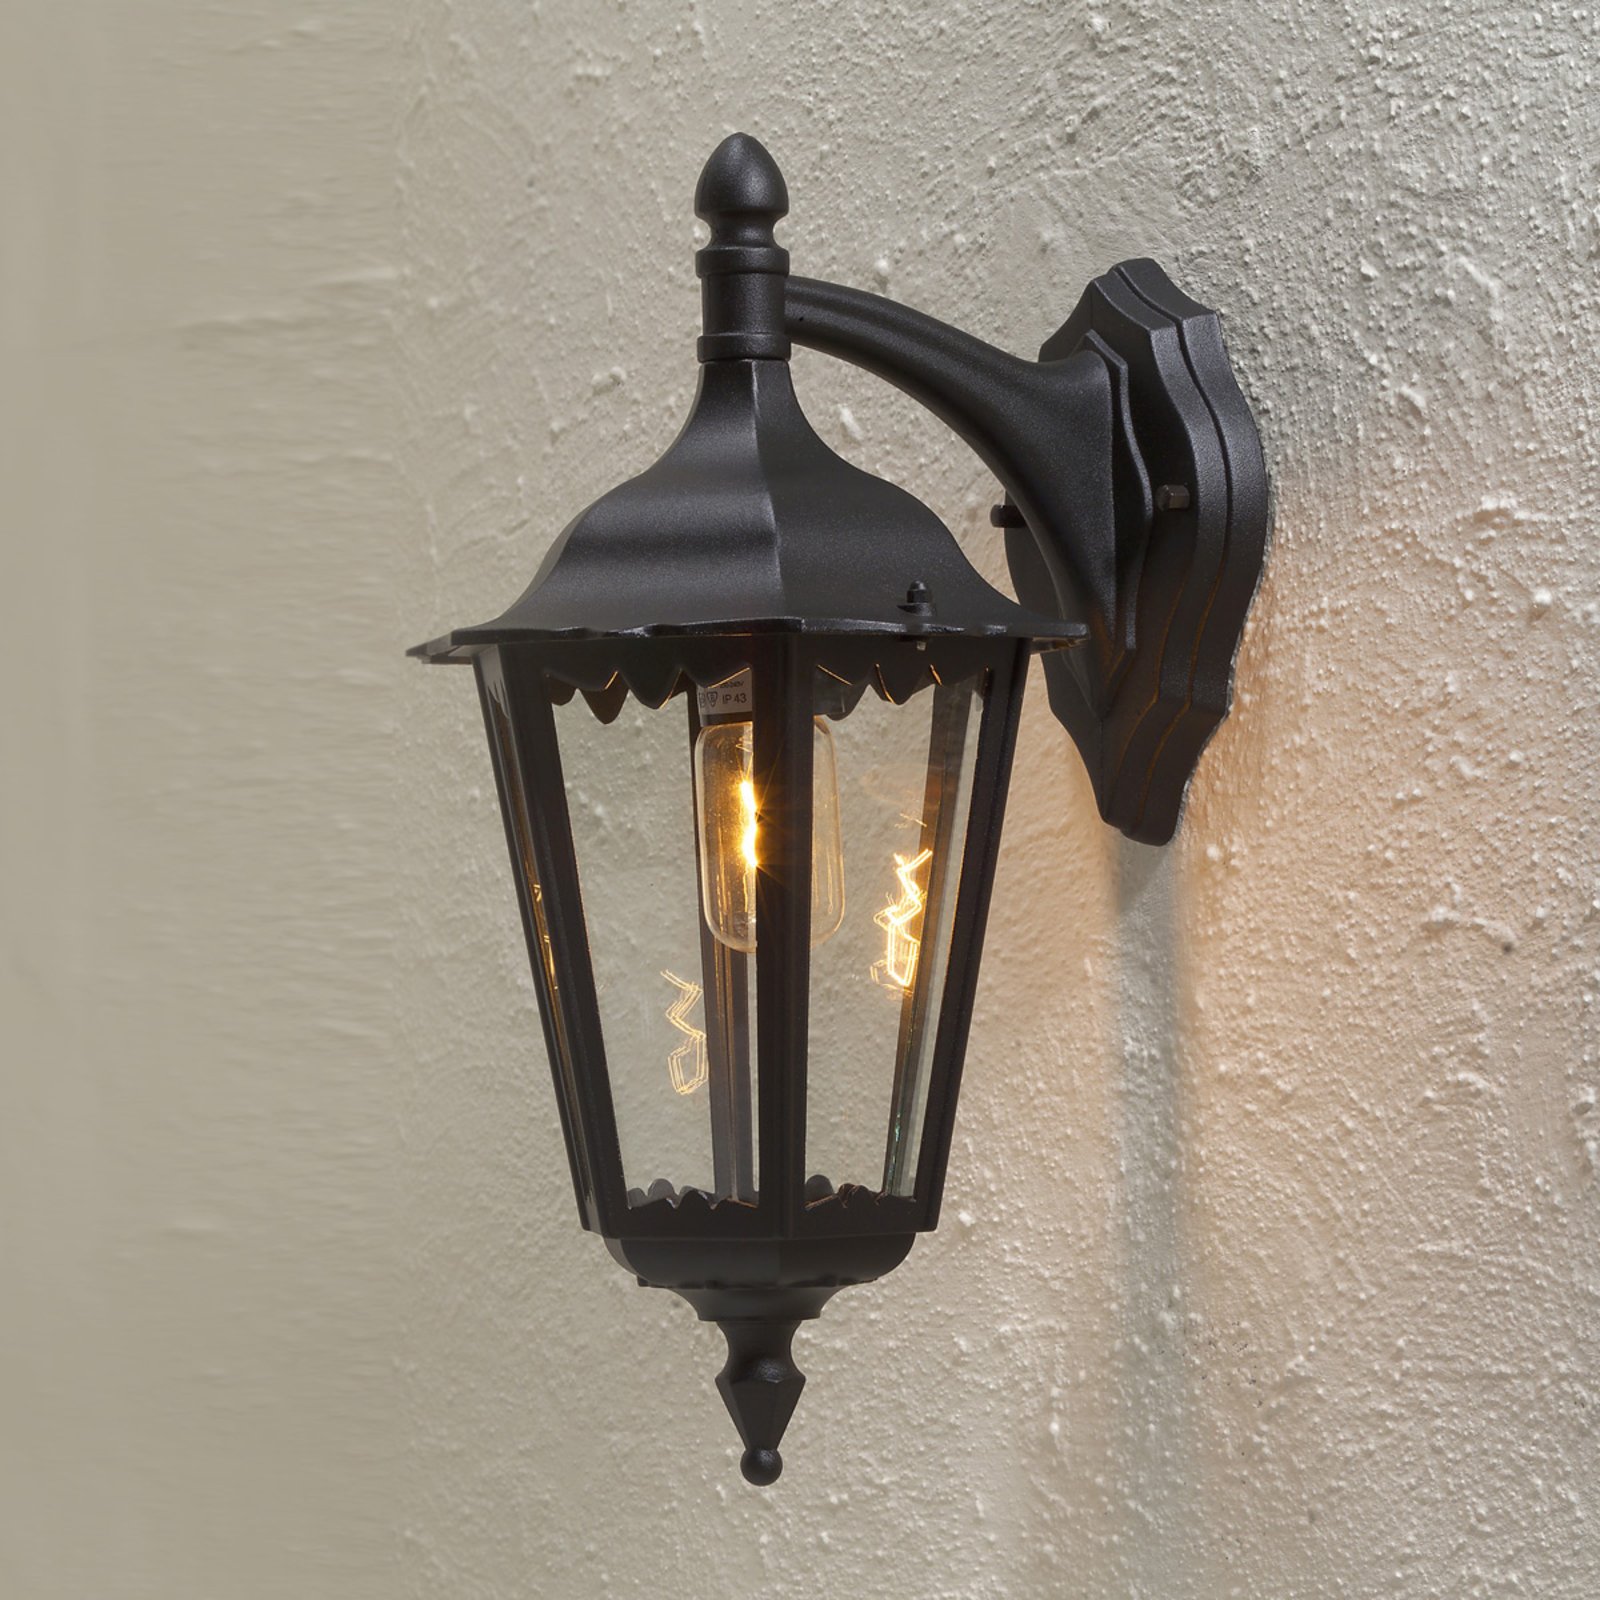 Firenze vanjska zidna svjetiljka, viseća, 48 cm, crna